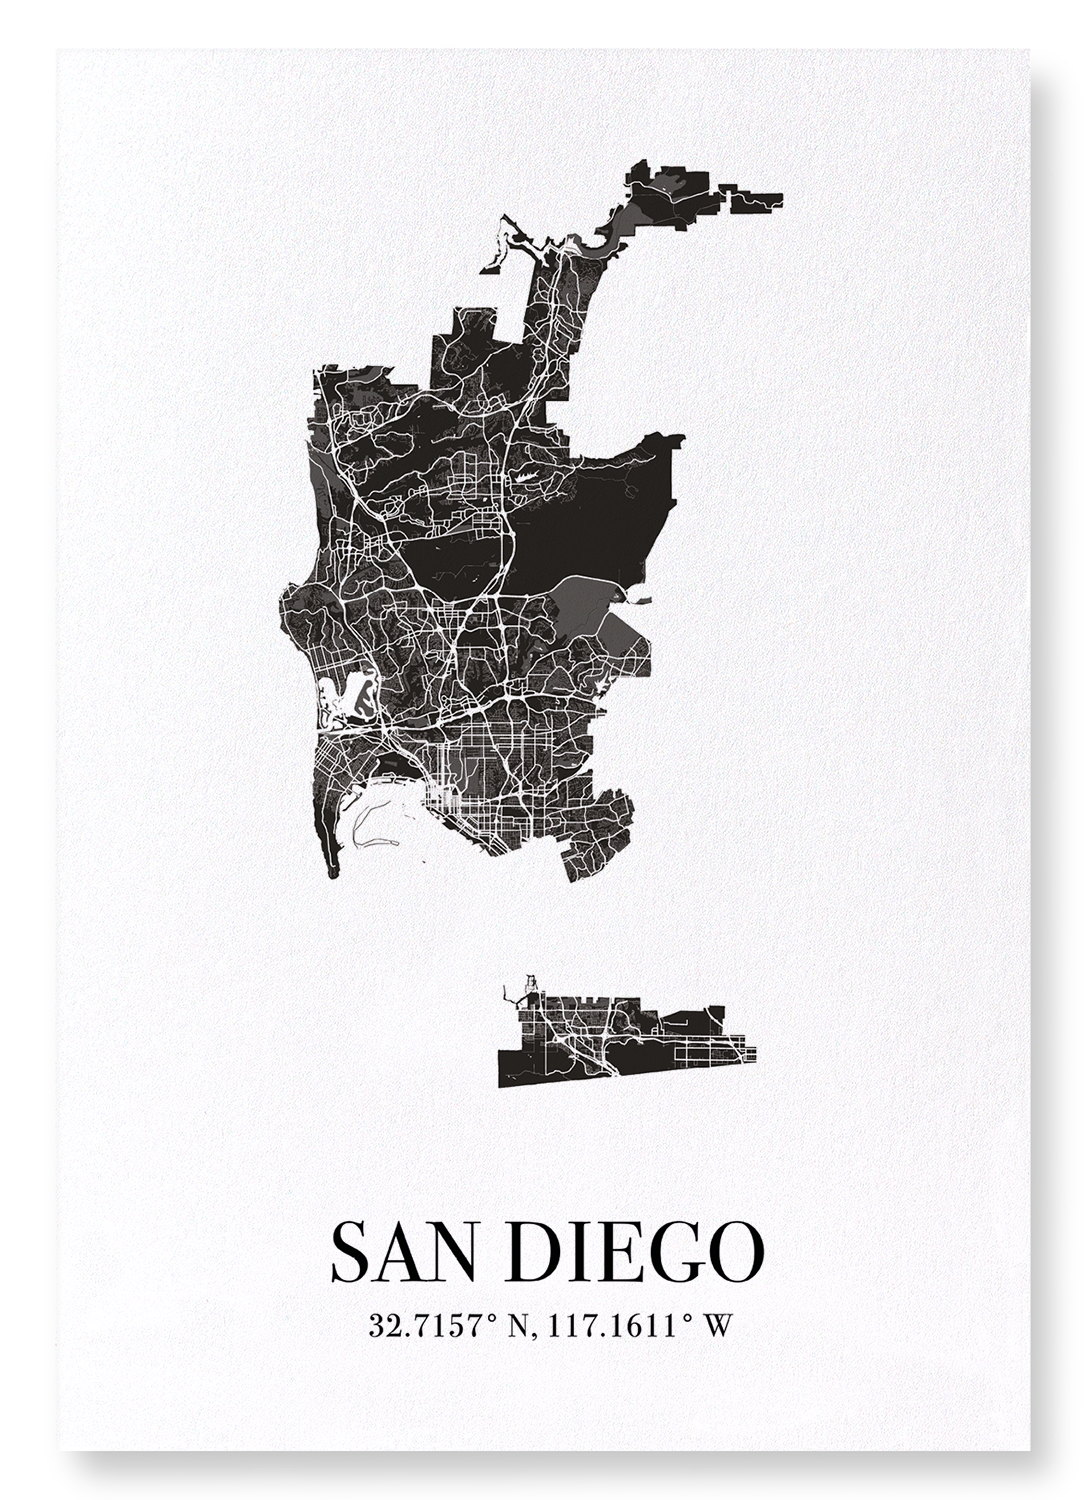 SAN DIEGO CUTOUT: Map Cutout Art Print